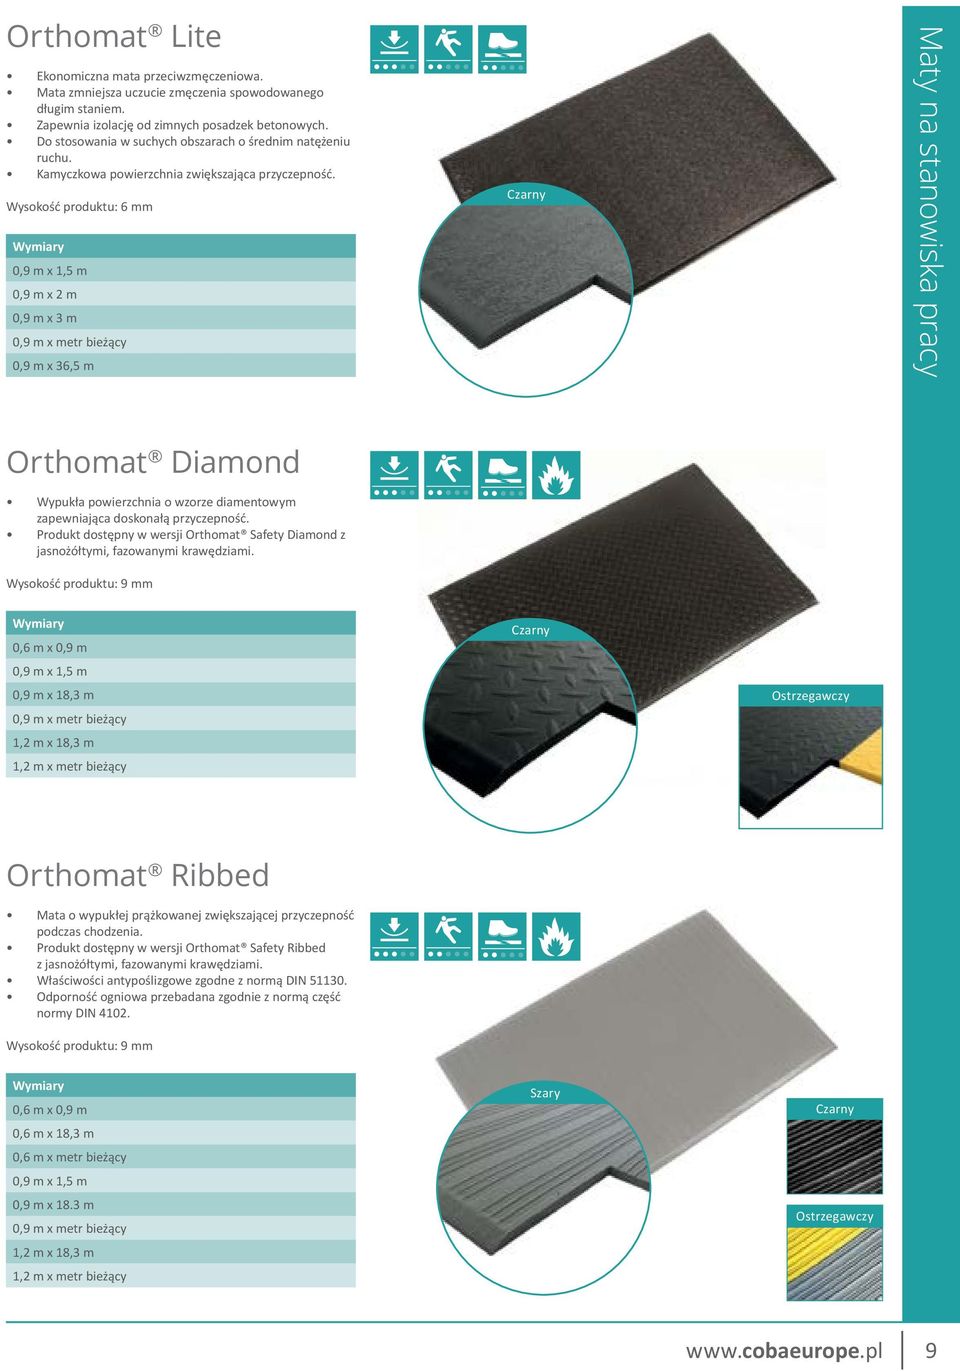 Wysokość produktu: 6 mm 0,9 m x 1,5 m 0,9 m x 2 m 0,9 m x 3 m 0,9 m x metr bieżący 0,9 m x 36,5 m Maty na stanowiska pracy Orthomat Diamond Wypukła powierzchnia o wzorze diamentowym zapewniająca